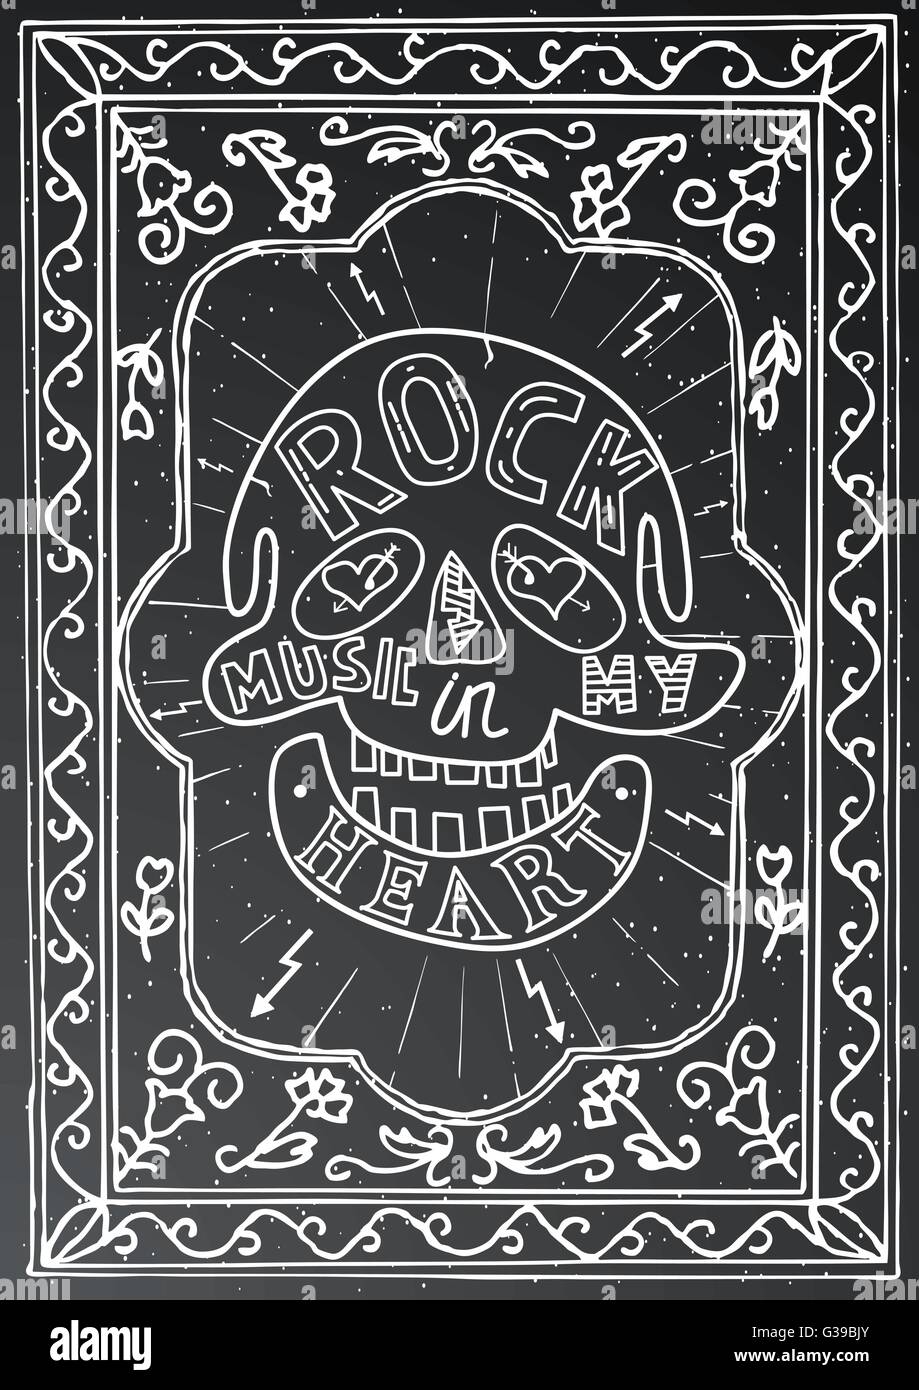 La musique rock dans mon coeur. Design lettrage dessiné à la main avec le crâne et la trame sur craie noire. Typographie concept pour t-shirt Illustration de Vecteur